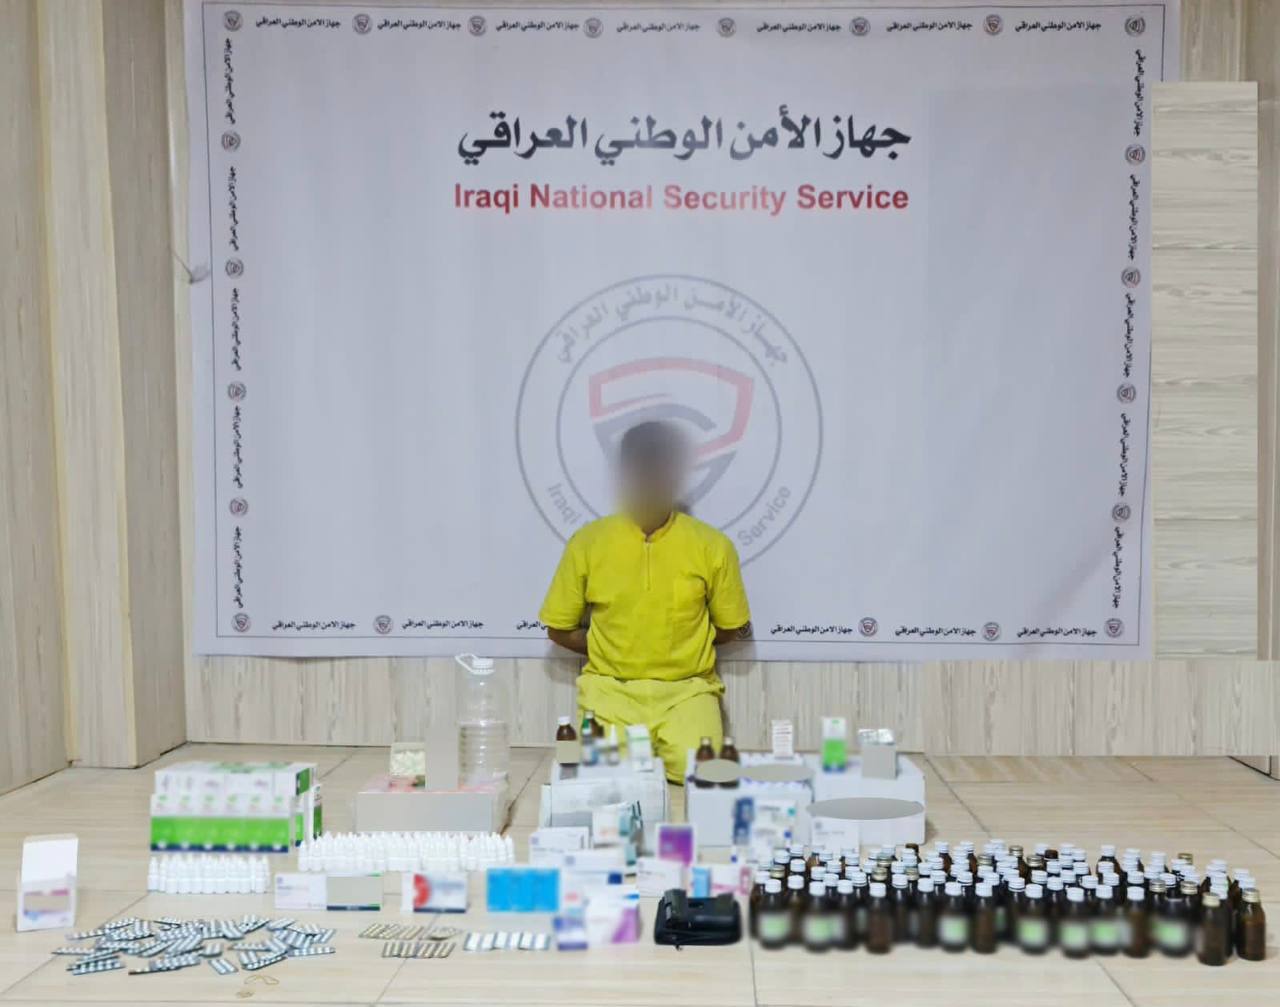 الأمن الوطني في البصرة يلقي القبض على صيدلاني يعمل بتجارة المخدرات